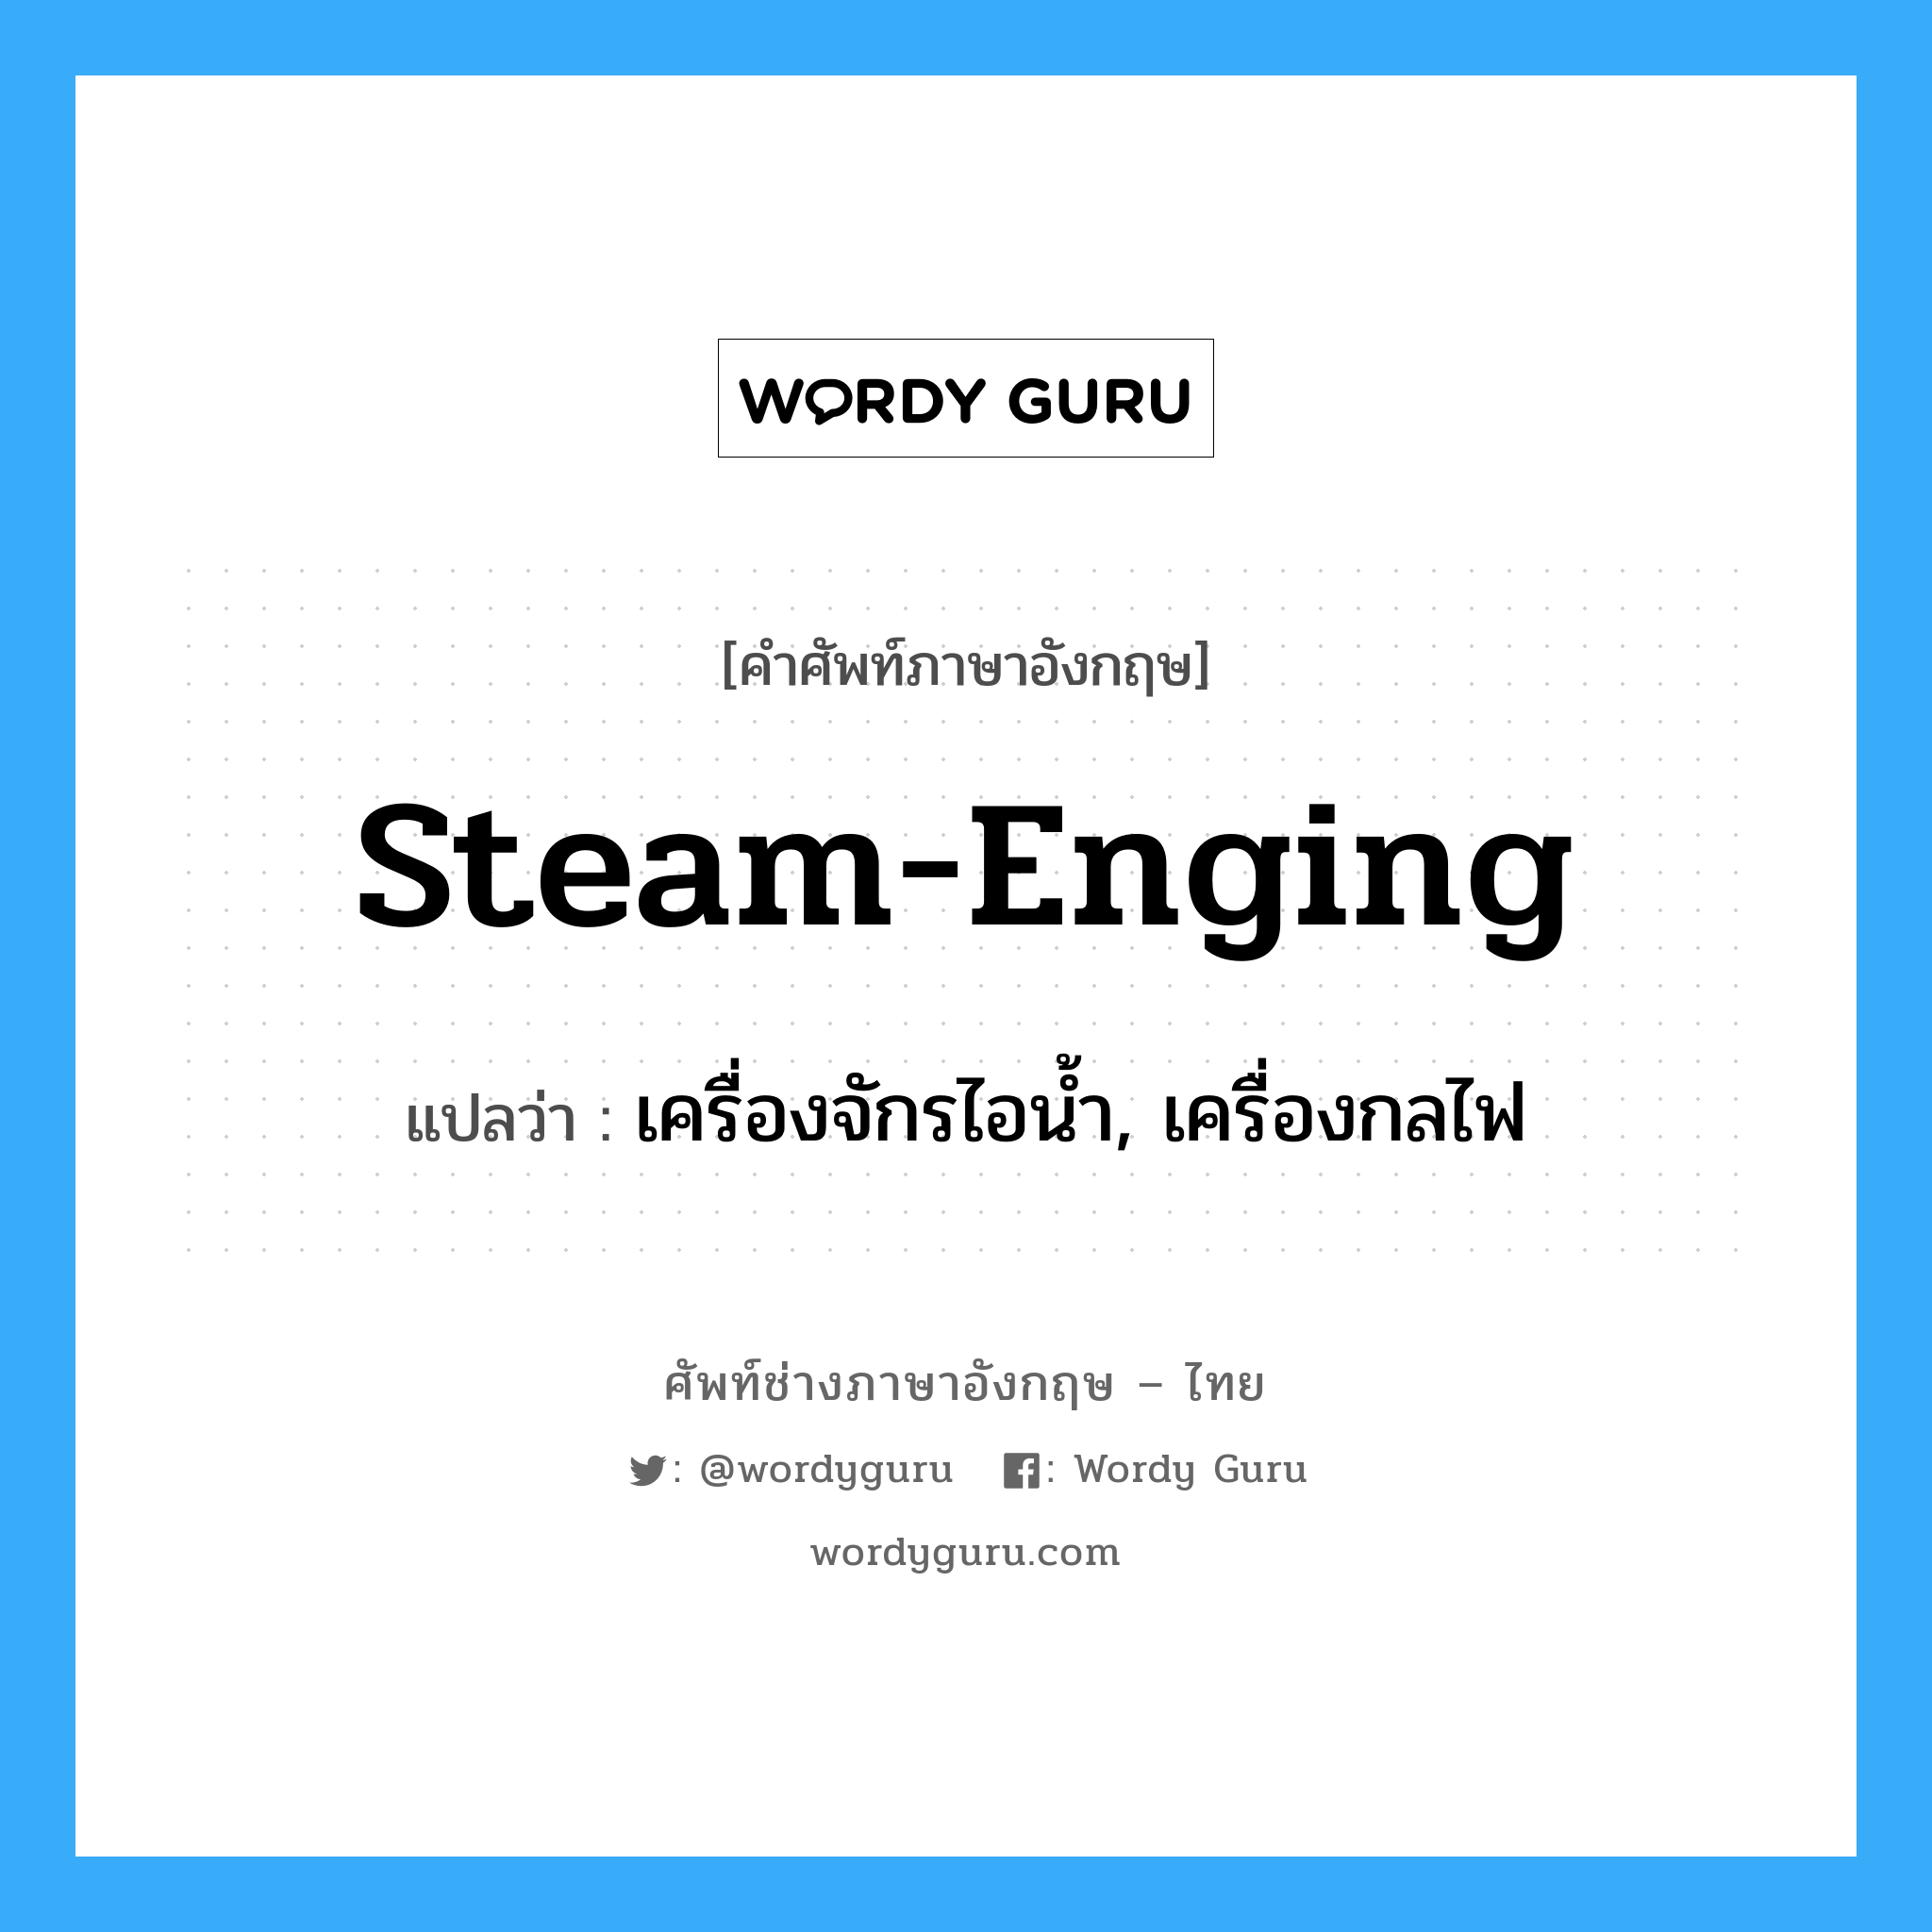 เครื่องจักรไอน้ำ, เครื่องกลไฟ ภาษาอังกฤษ?, คำศัพท์ช่างภาษาอังกฤษ - ไทย เครื่องจักรไอน้ำ, เครื่องกลไฟ คำศัพท์ภาษาอังกฤษ เครื่องจักรไอน้ำ, เครื่องกลไฟ แปลว่า steam-enging